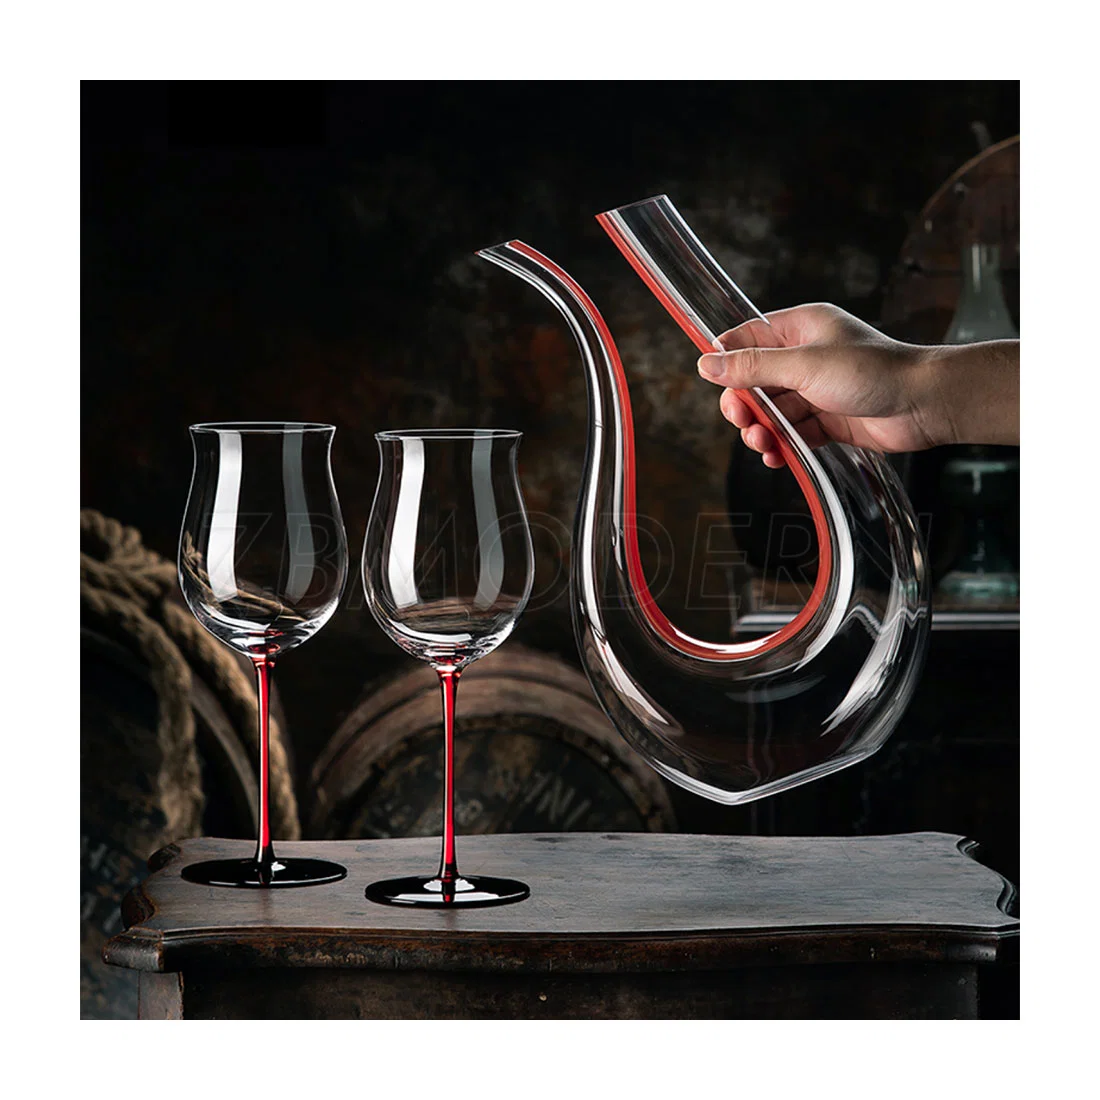 Comercio al por mayor de hogares de estilo simple tipo banda creativa copa de cristal de vidrio de vino tinto